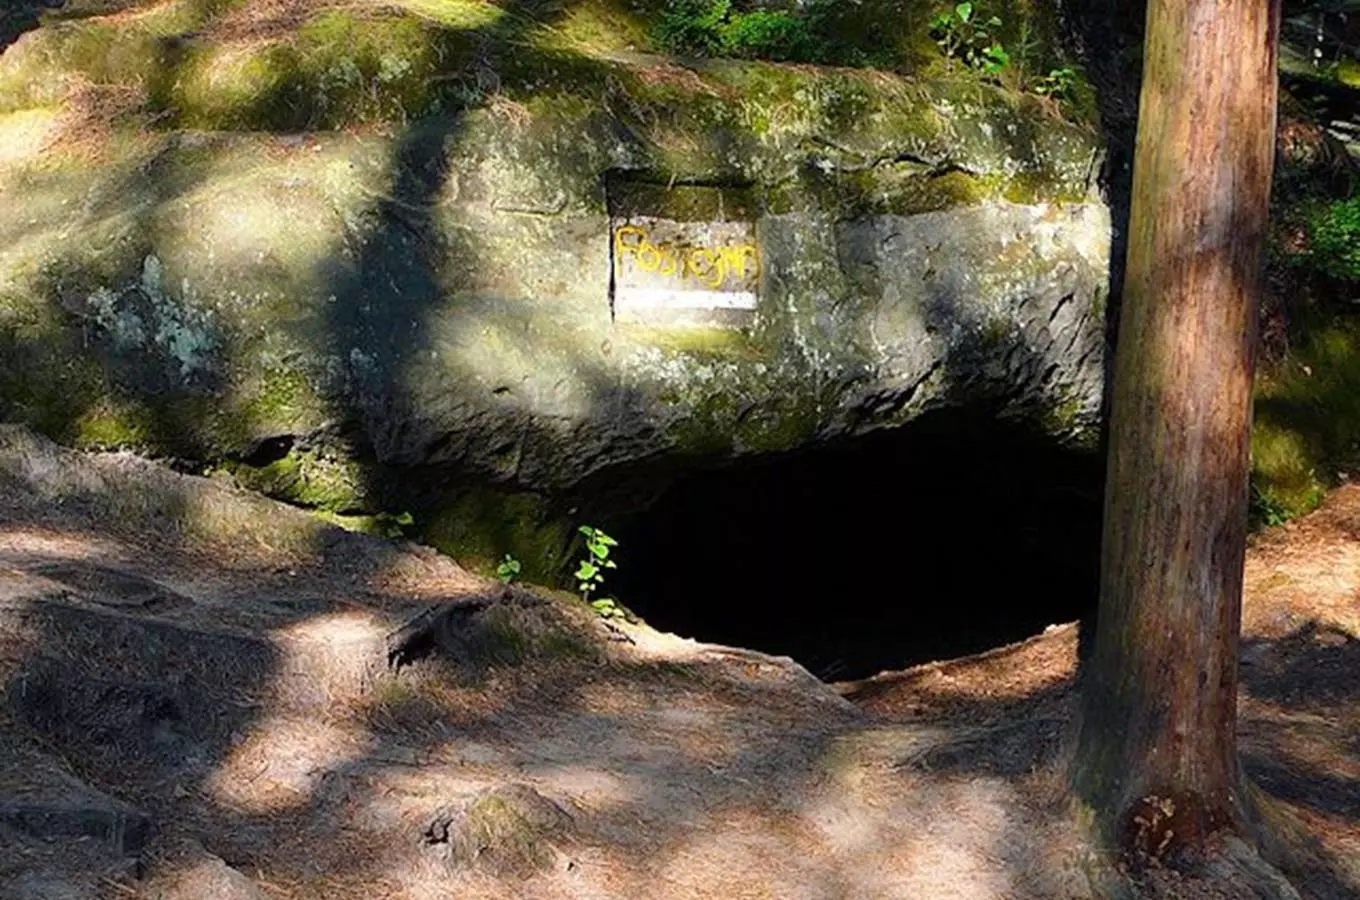 #světovéČesko a jeskyně Postojna: největší jeskyně Českého ráje, kam se leze po čtyřech